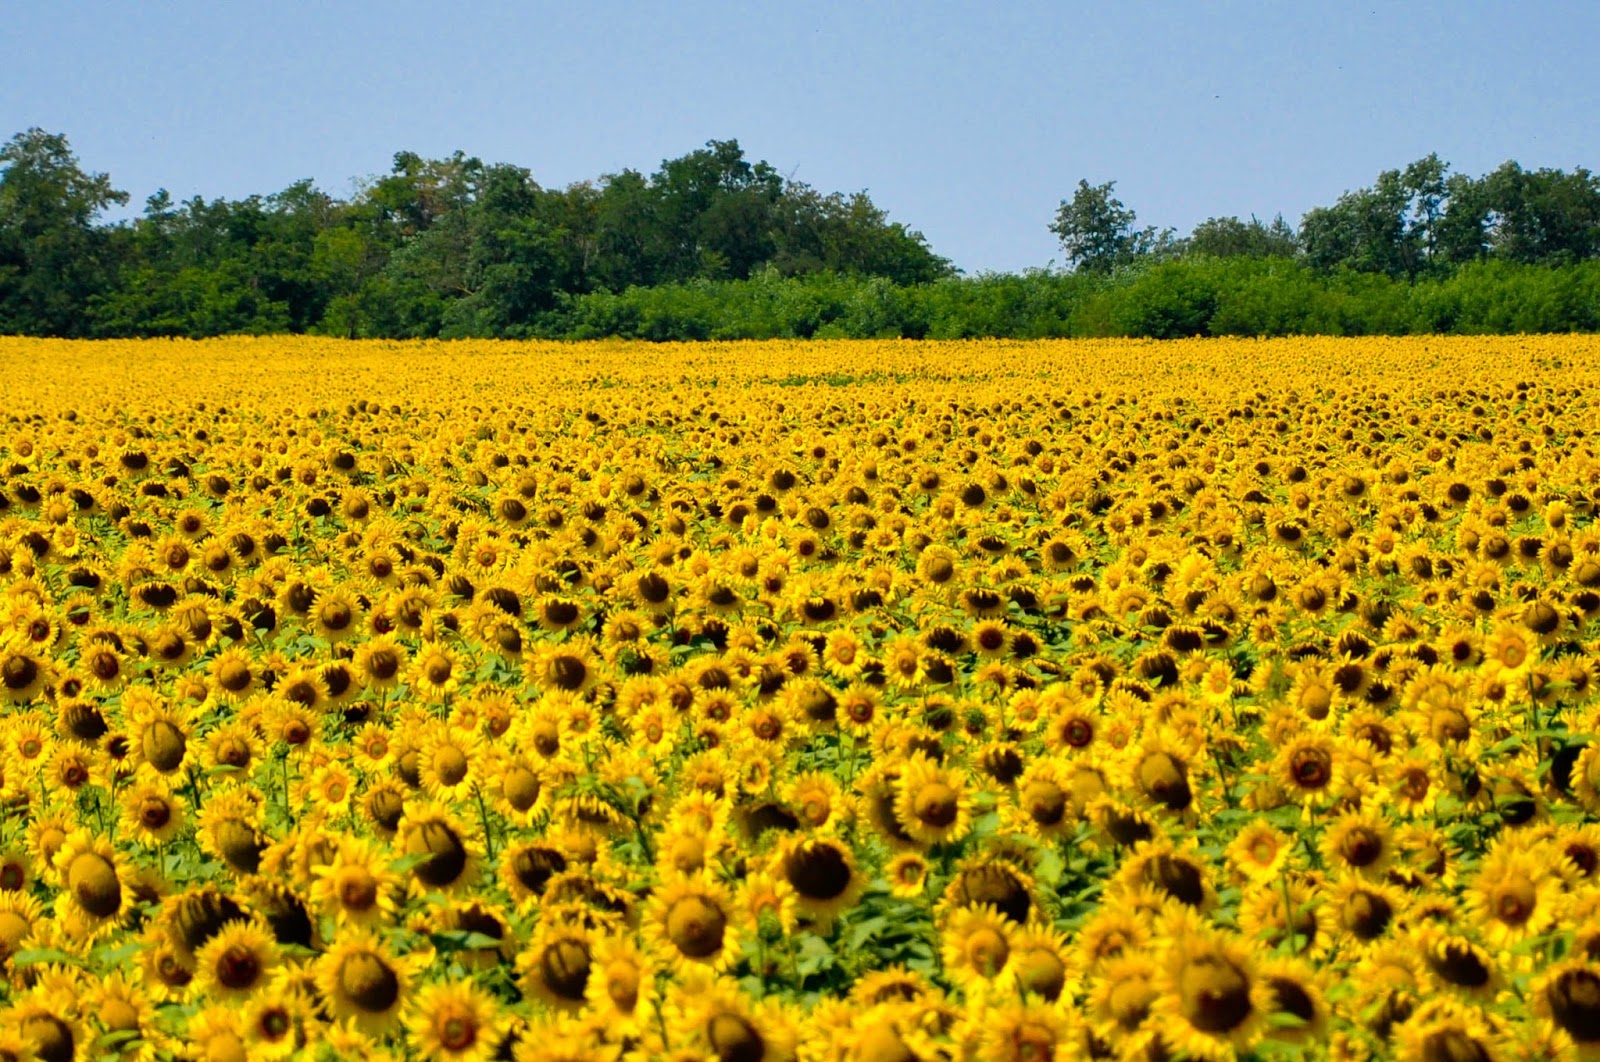 The Golden Sunflower Fields Outside Varna, Bulgaria